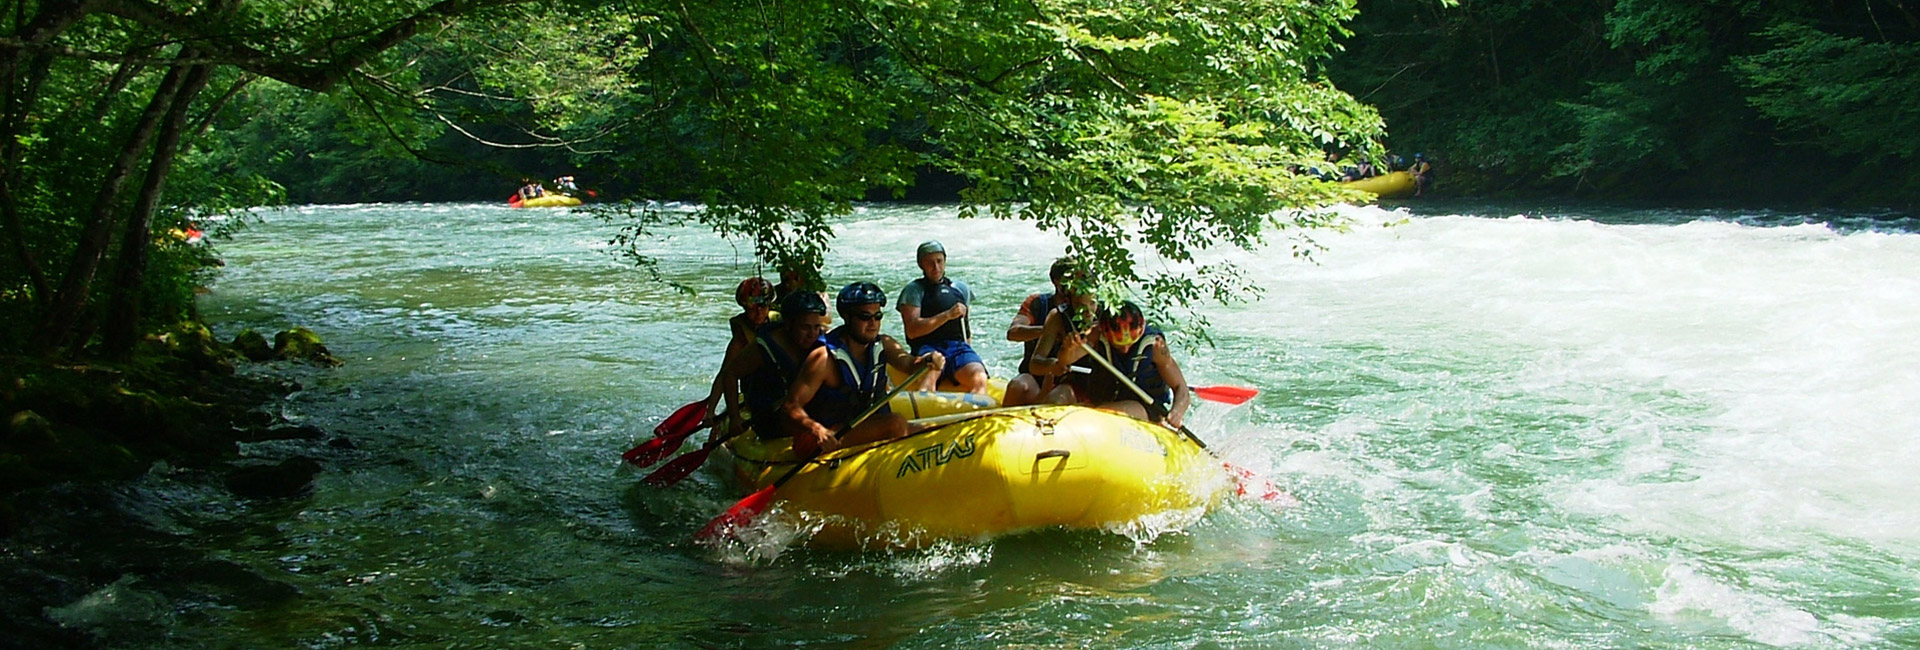 Mreznica River Kayaking (Rafting)